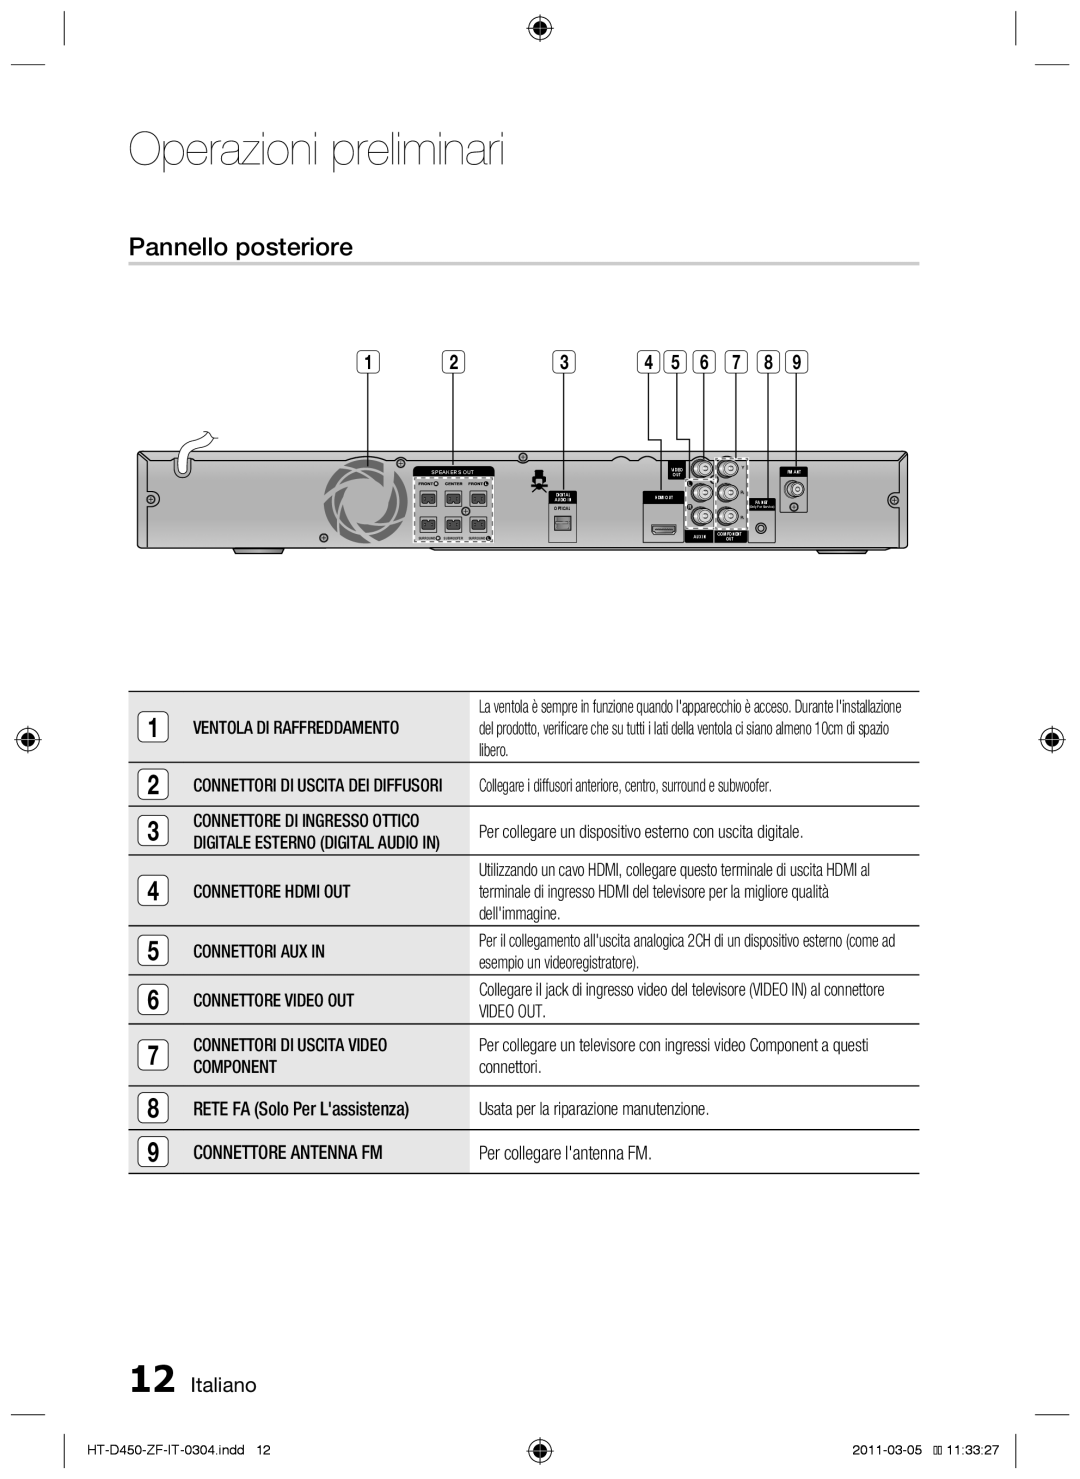 Samsung HT-D450, HT-D455, HT-D453 user manual Operazioni preliminari, Pannello posteriore, Italiano 